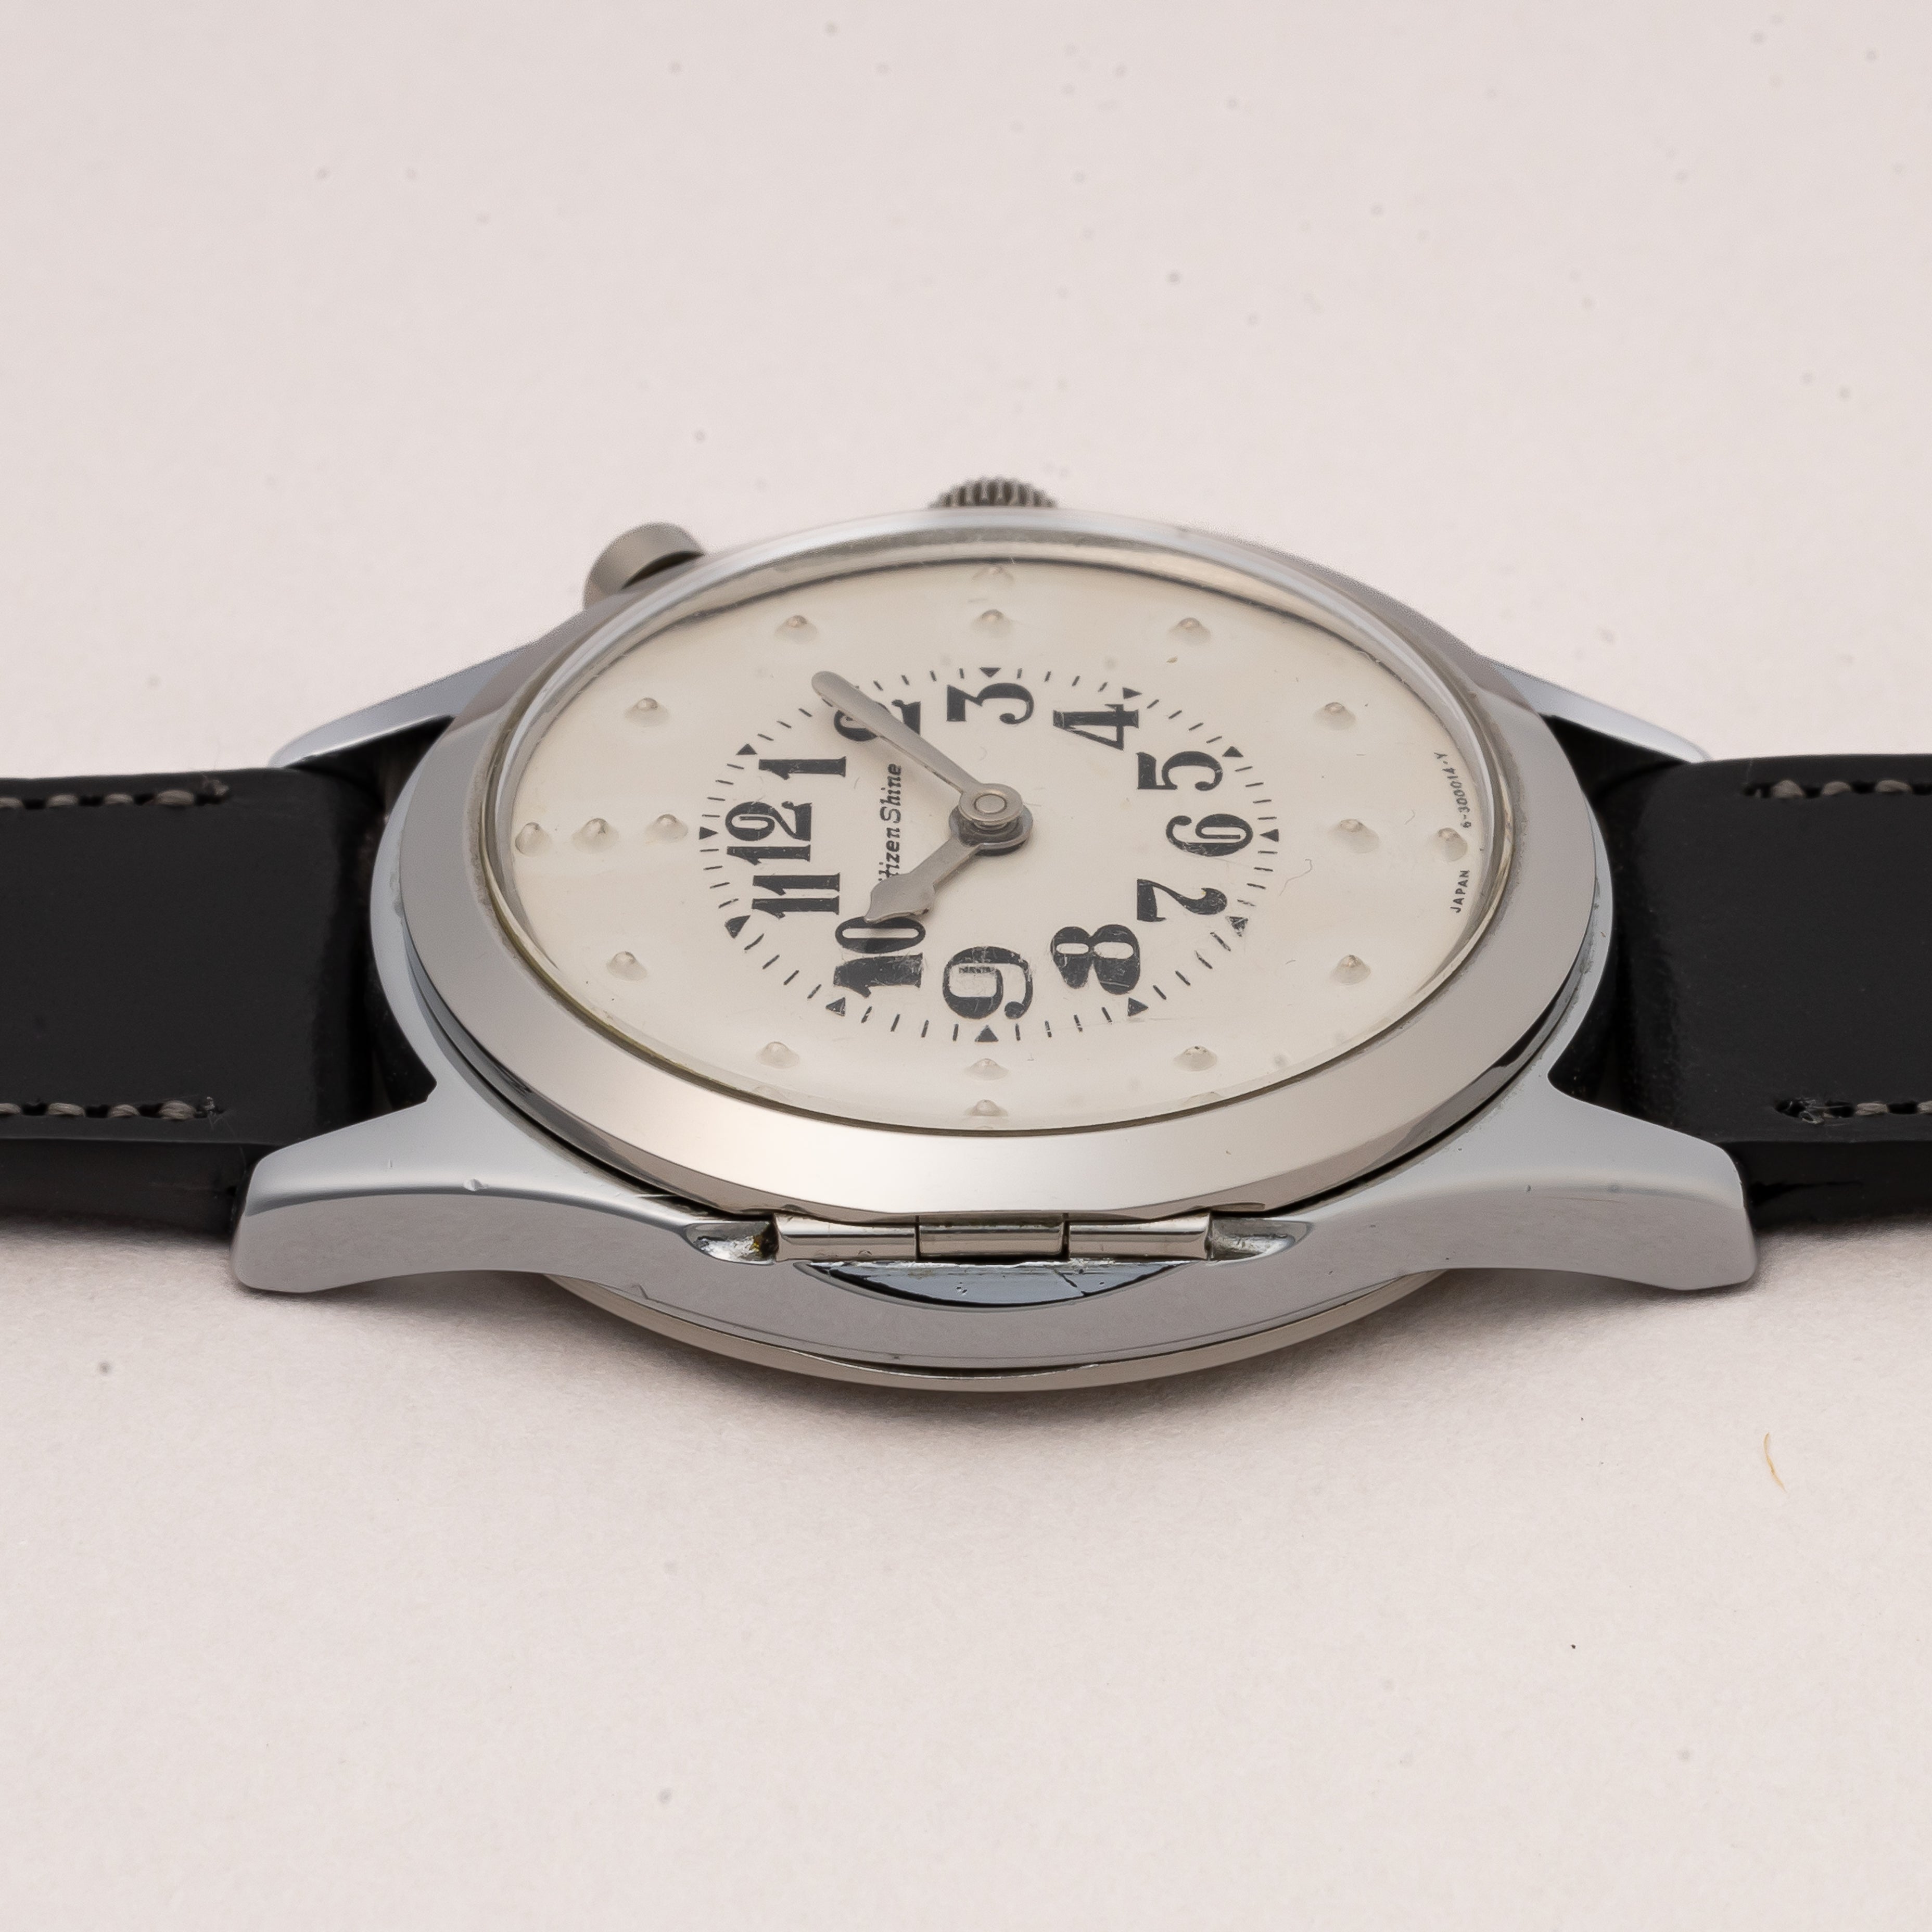 シチズン 国産初の視覚障害者対応腕時計 シャイン 1964年製 – FIRE KIDS